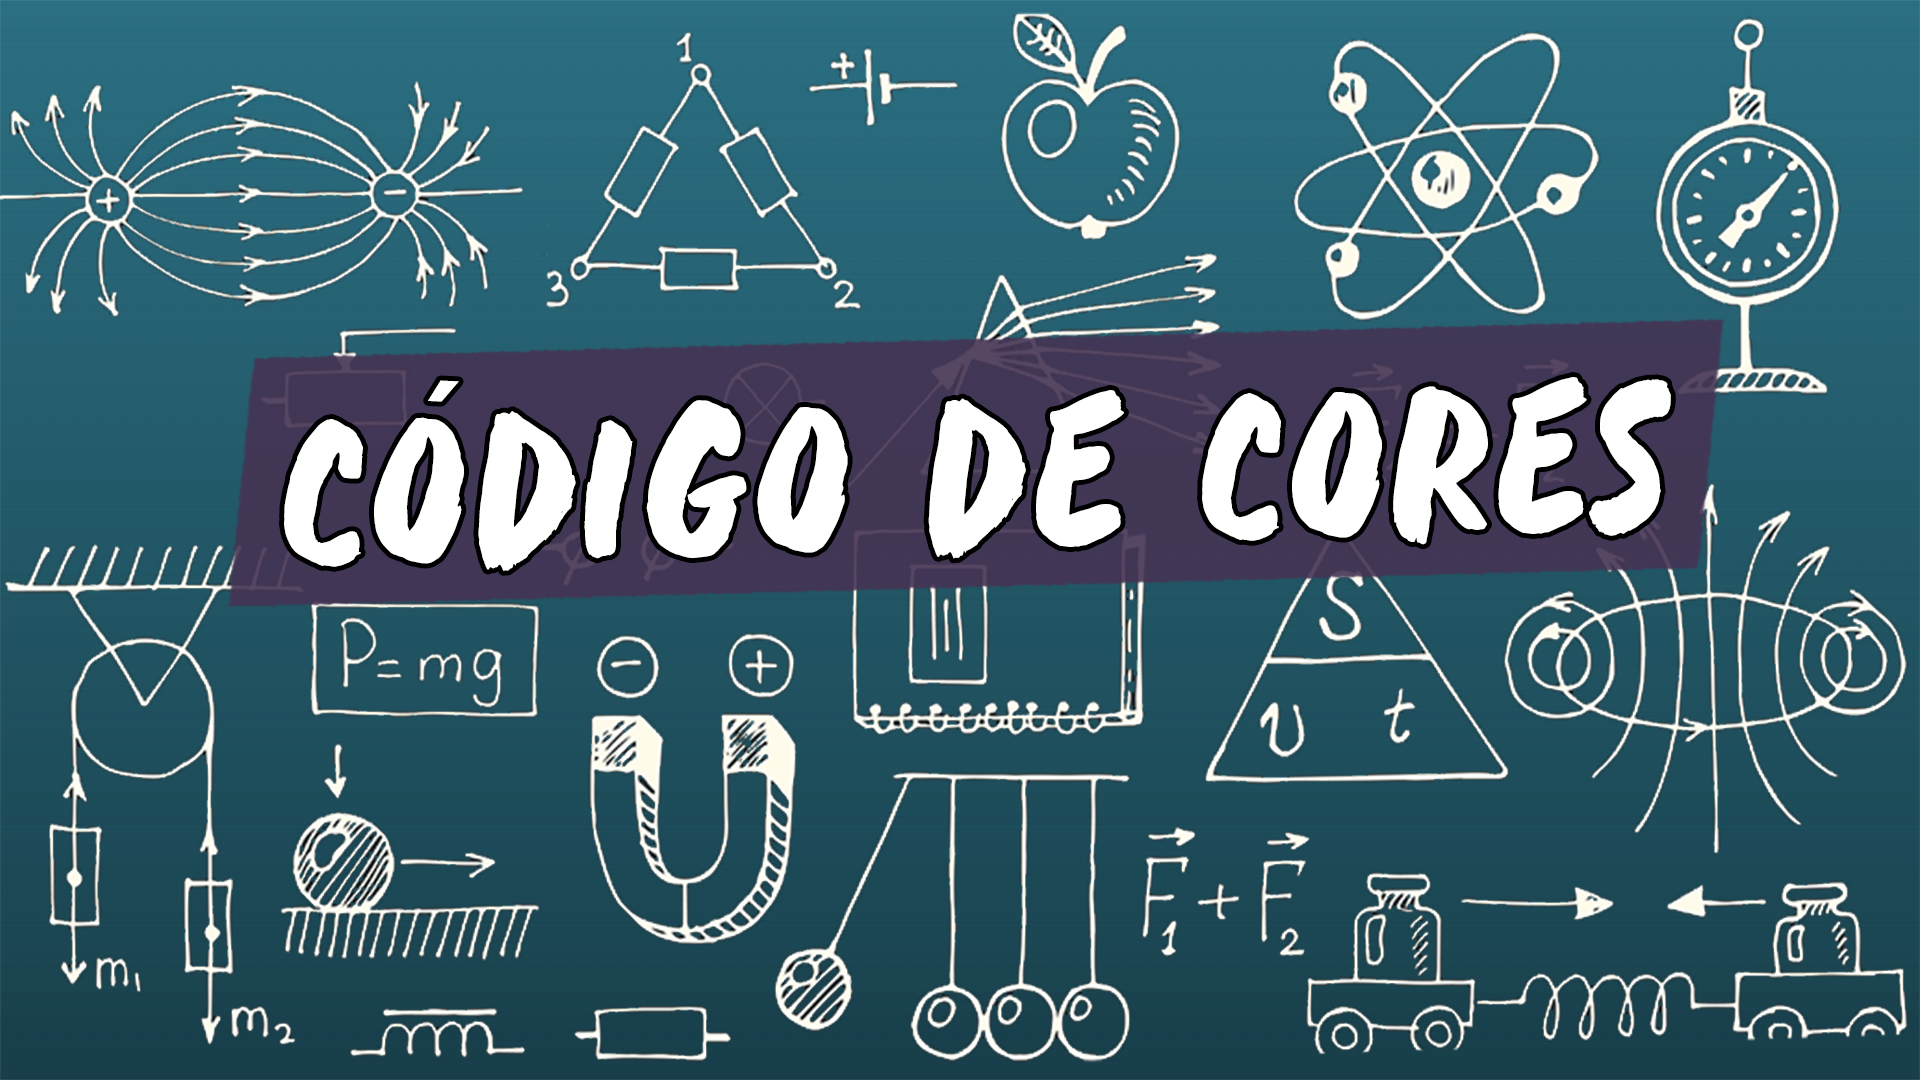 Escrito"Código de Cores" sobre uma representação de vários conceitos da área da física.